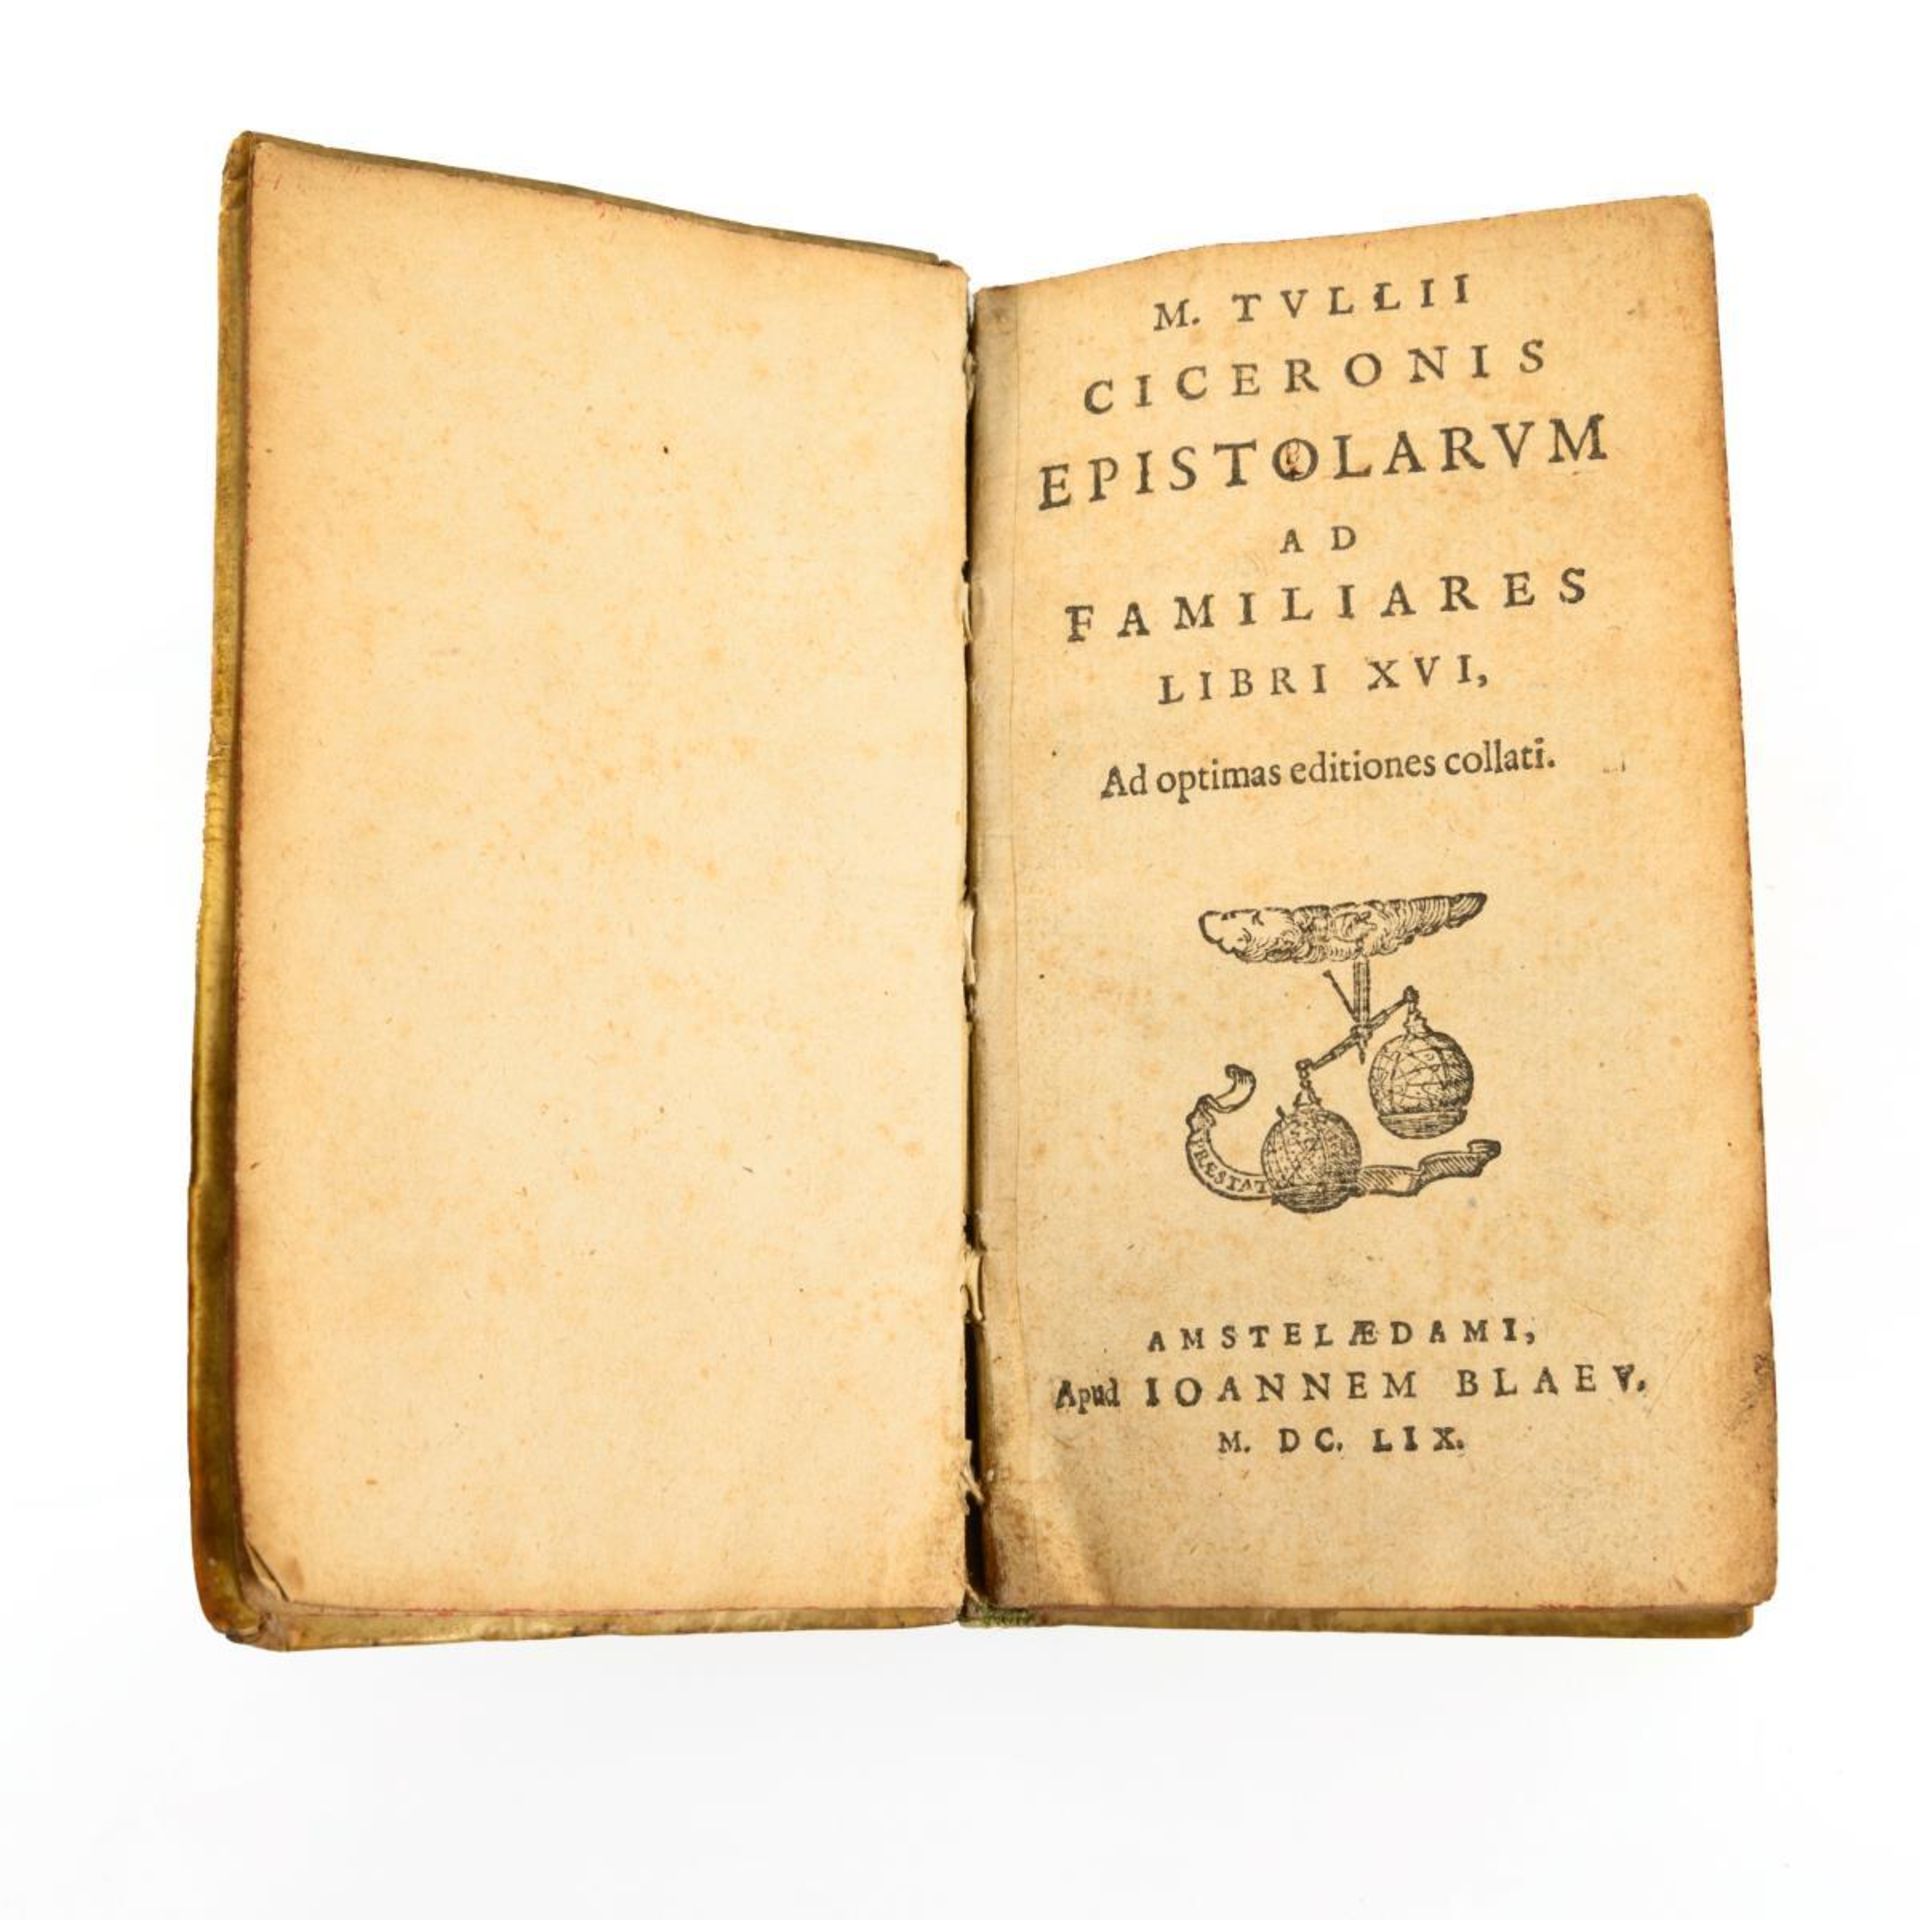 CICERO, M. Tullius. "Epistolarum ad Familiaris" Libri XVI.